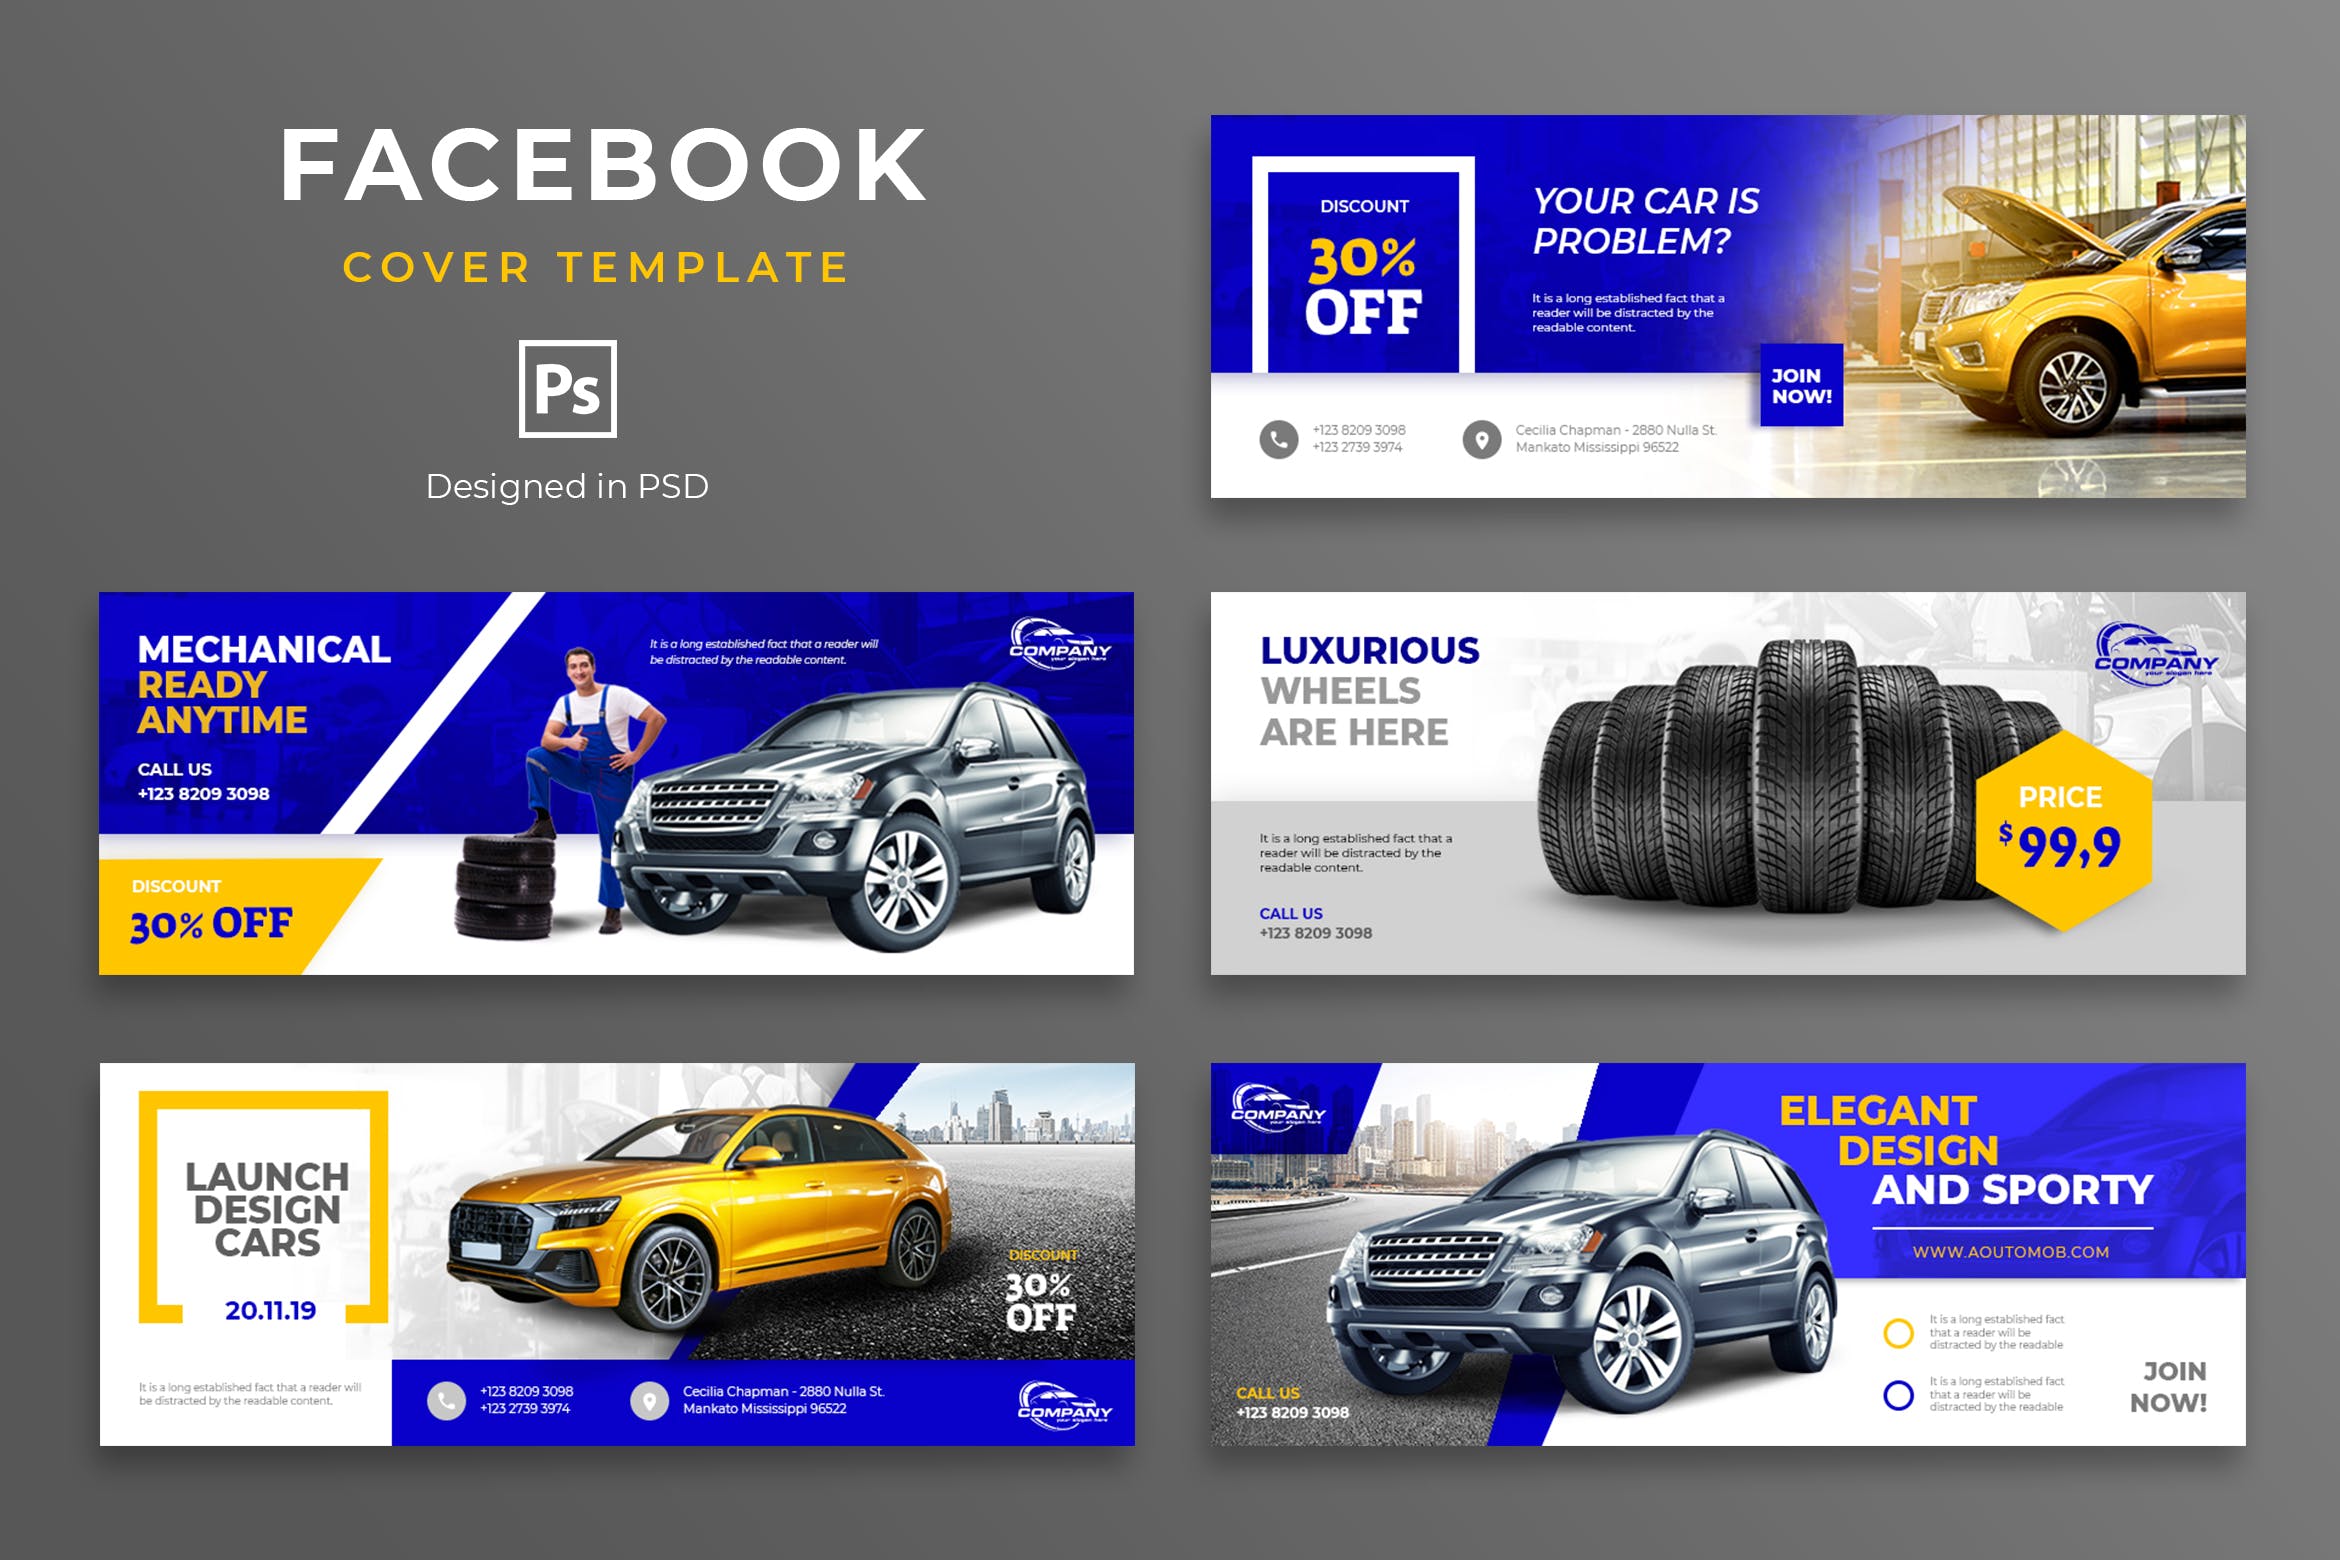 汽车品牌Facebook营销推广主页封面设计模板大洋岛精选 Automotive Facebook Cover Template插图